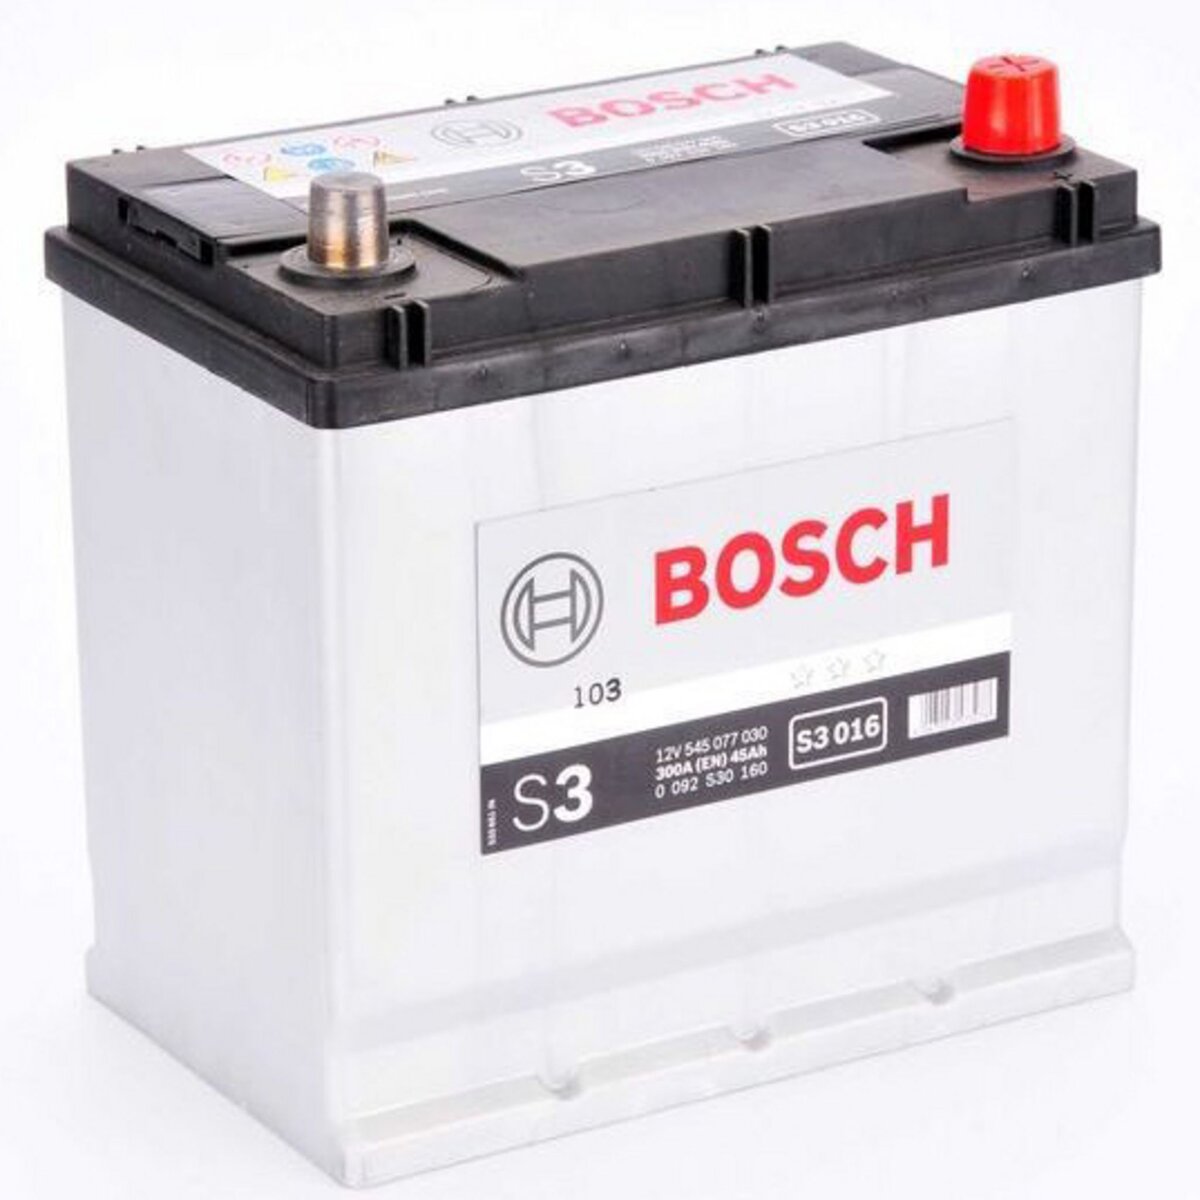 BOSCH Batterie Bosch S3016 45Ah 300A BOSCH